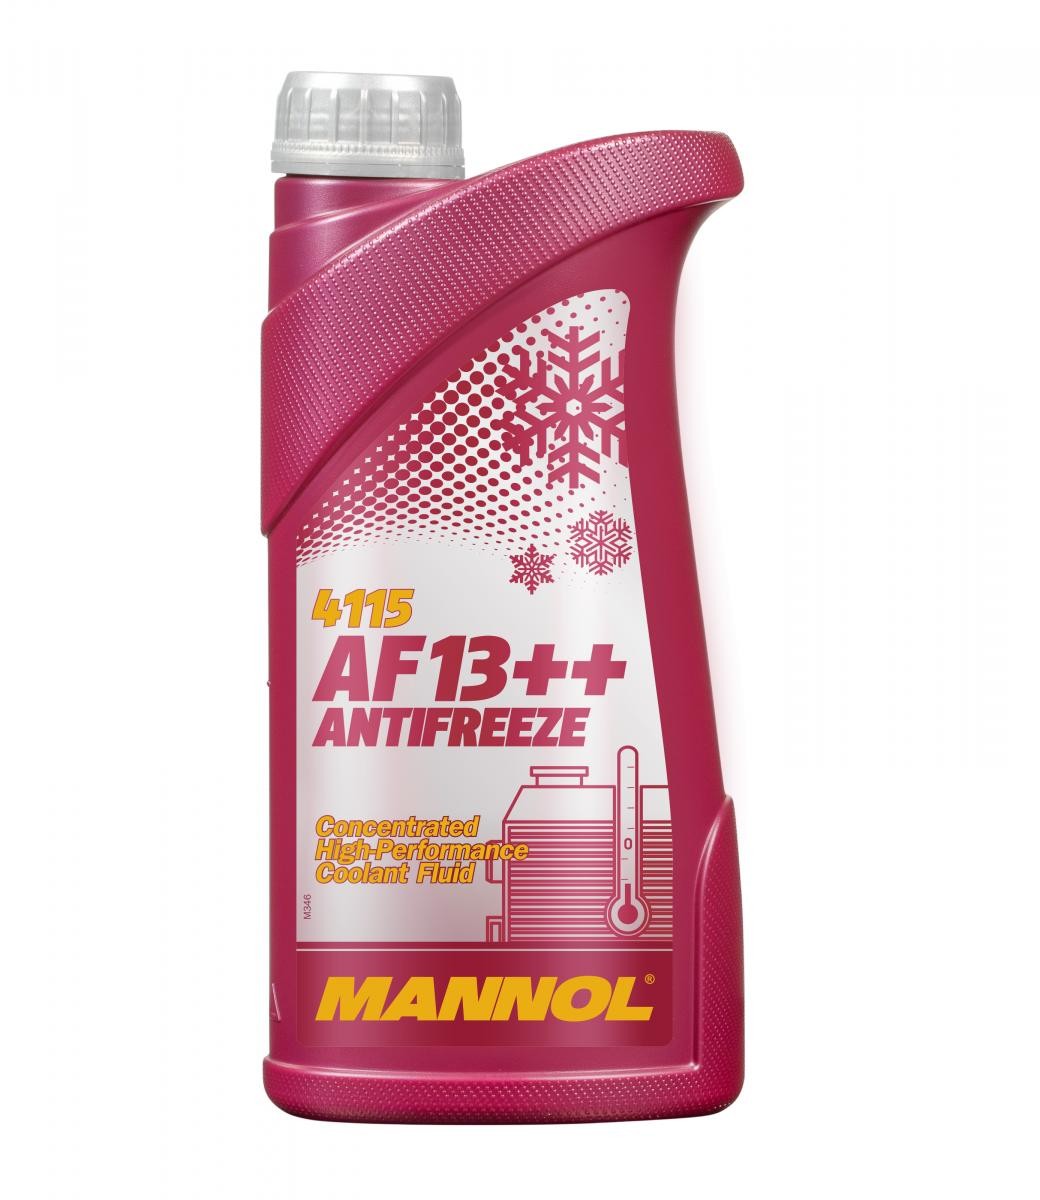 MANNOL AF13++, High-performance MN4115-1 BENELLI Kühlmittel Motorrad zum günstigen Preis